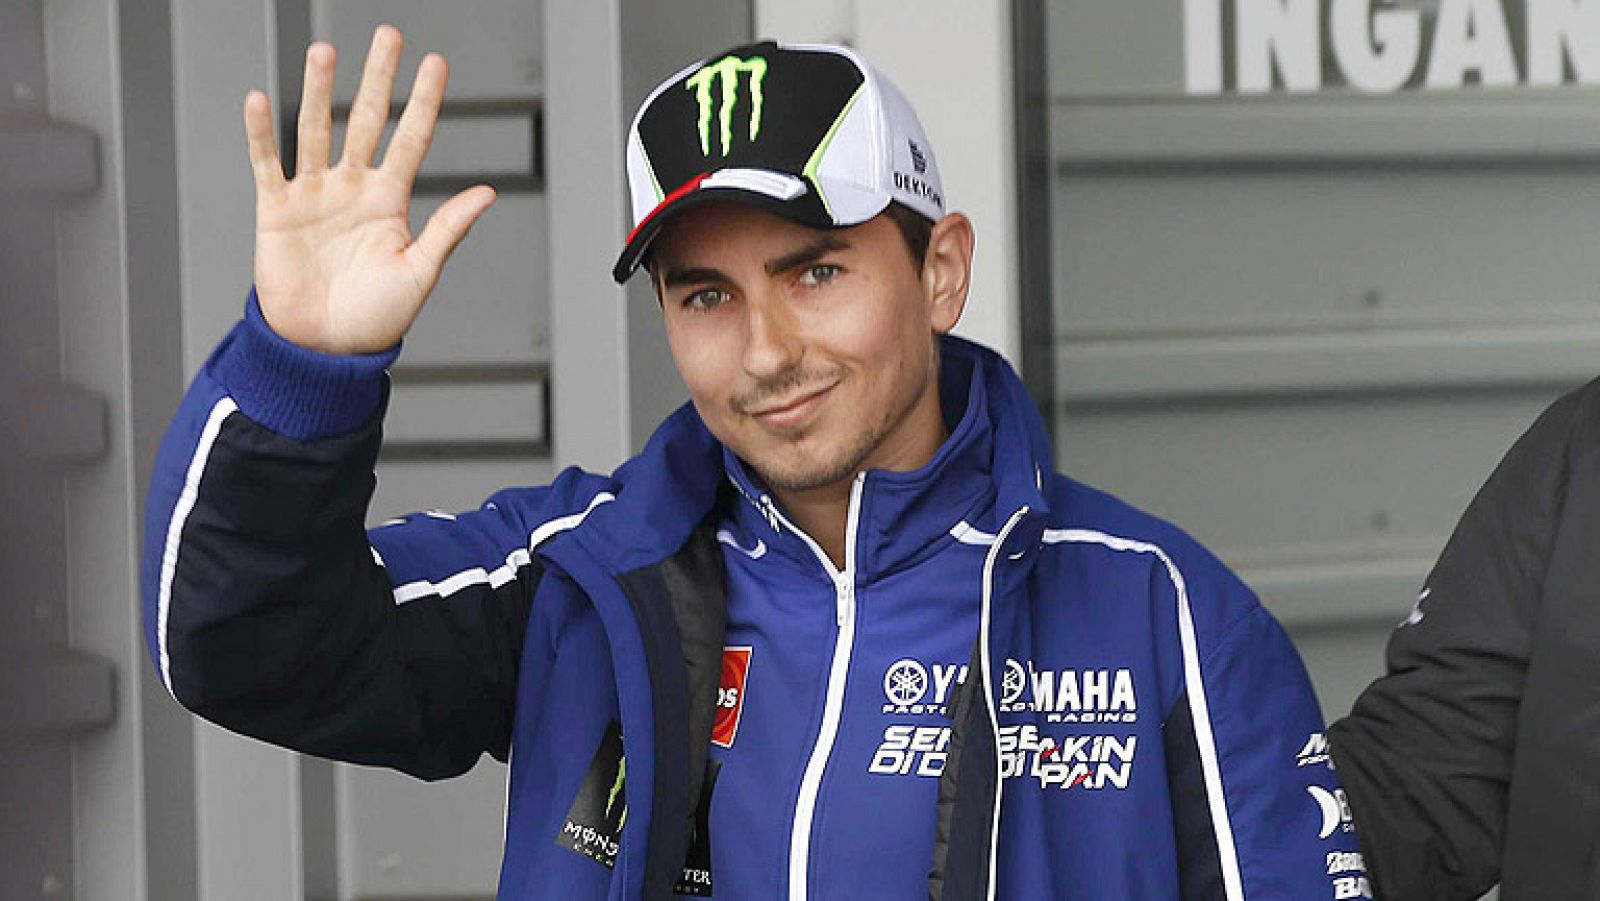 El piloto español de MotoGP Jorge Lorenzo ha regresado a casa para recuperarse de la rotura de su clavícula, que no le impidió disputar el GP de Assen de motociclismo.